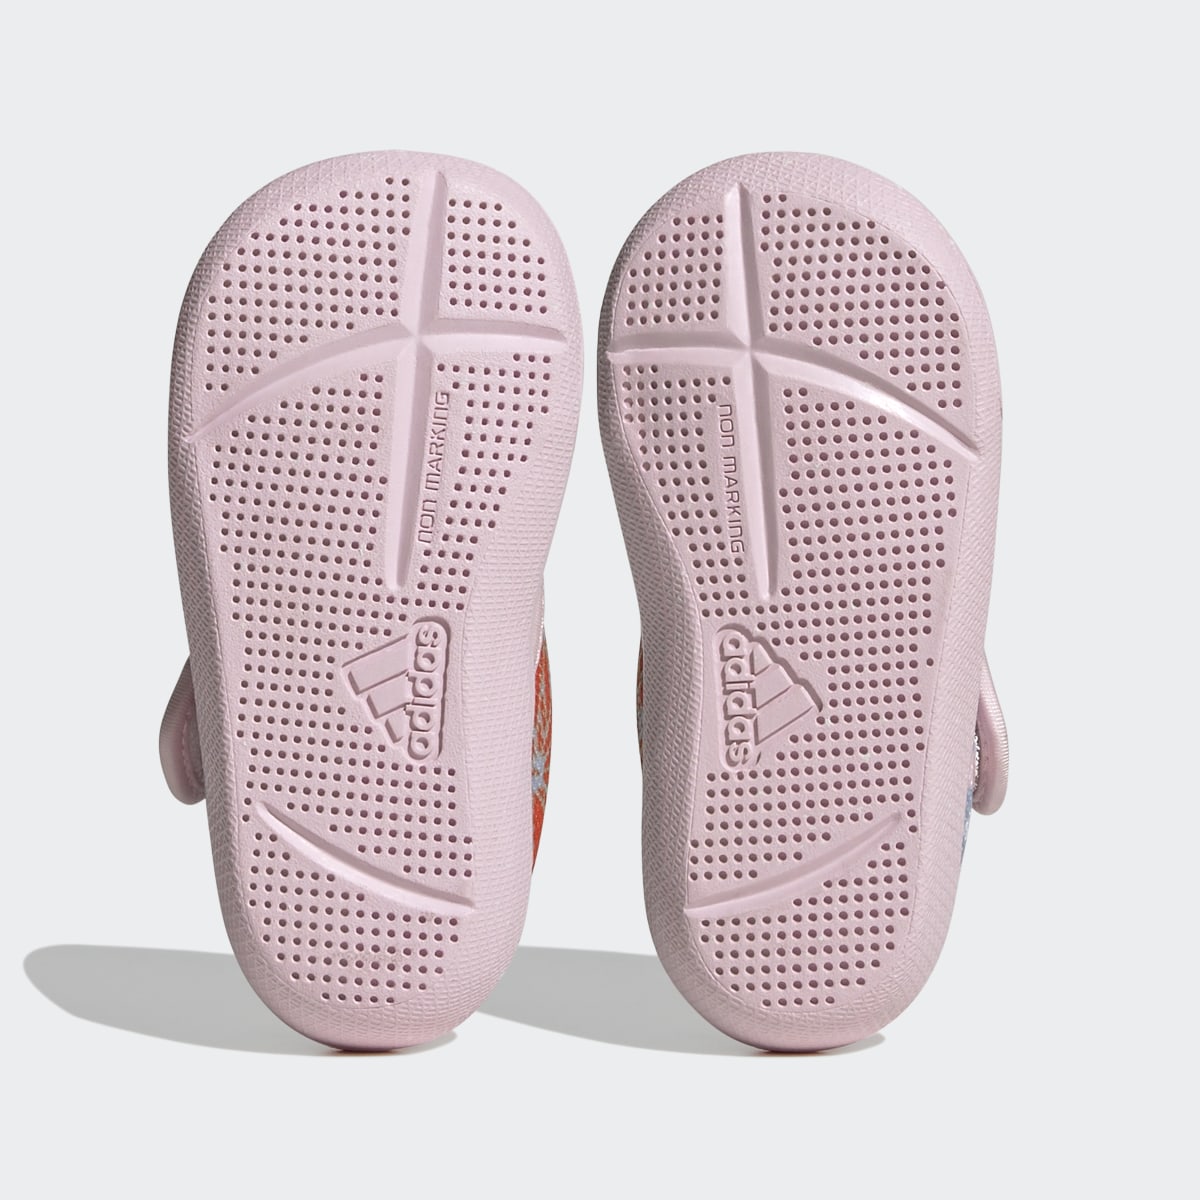 Adidas x Disney AltaVenture 2.0 Moana Sandalet. 4